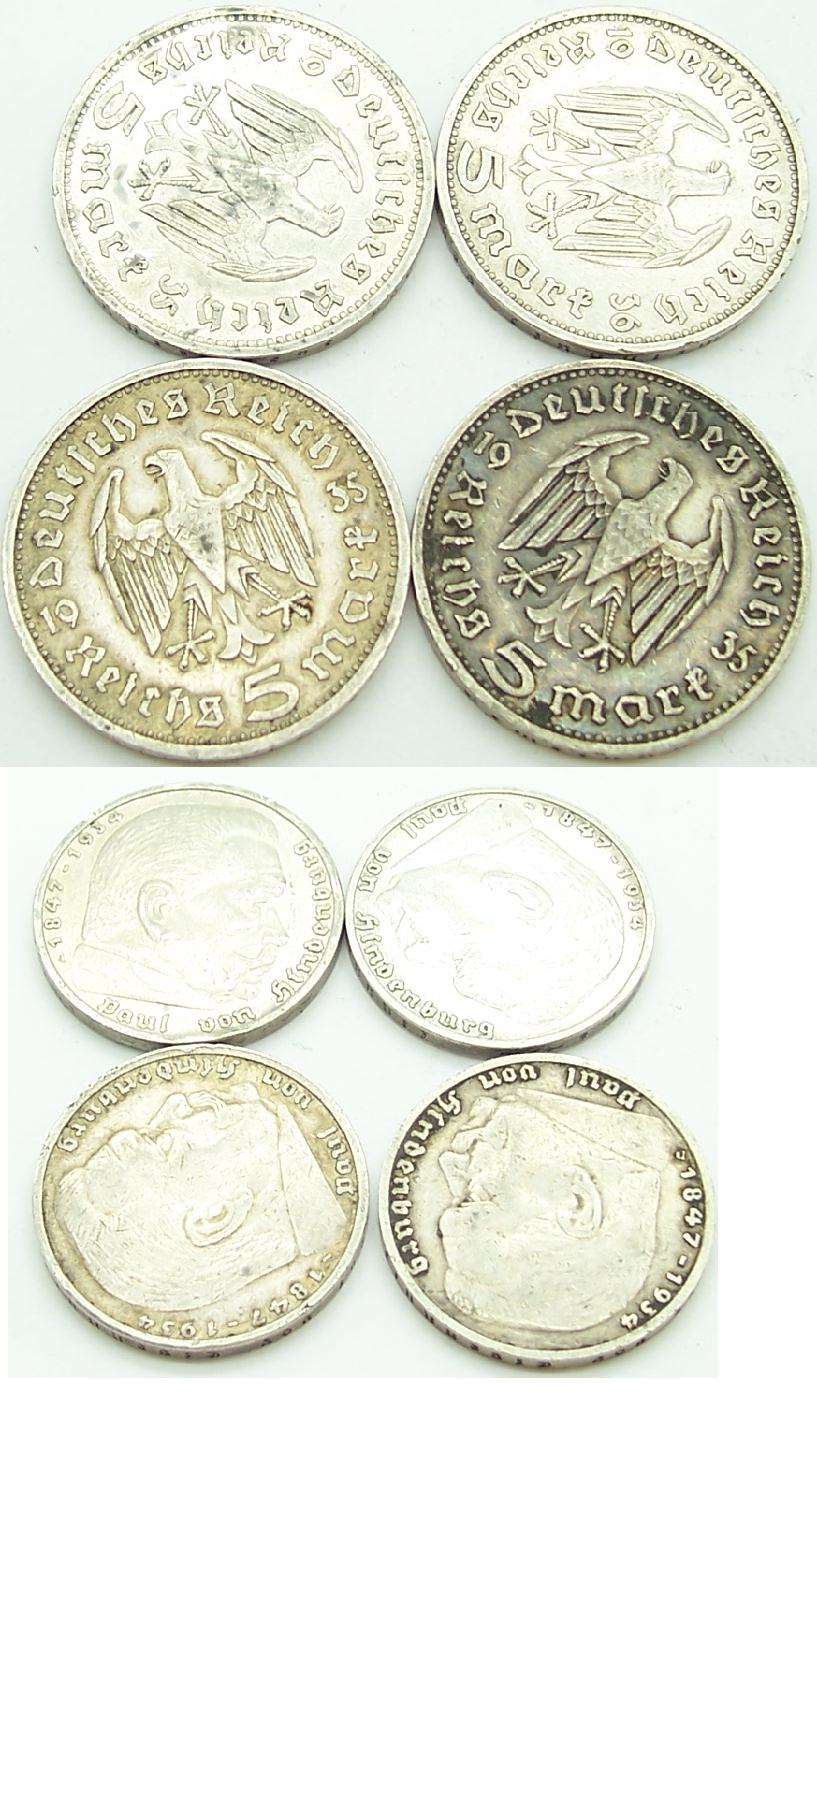 4-Deutches Reich 5 Mark coins in Silver